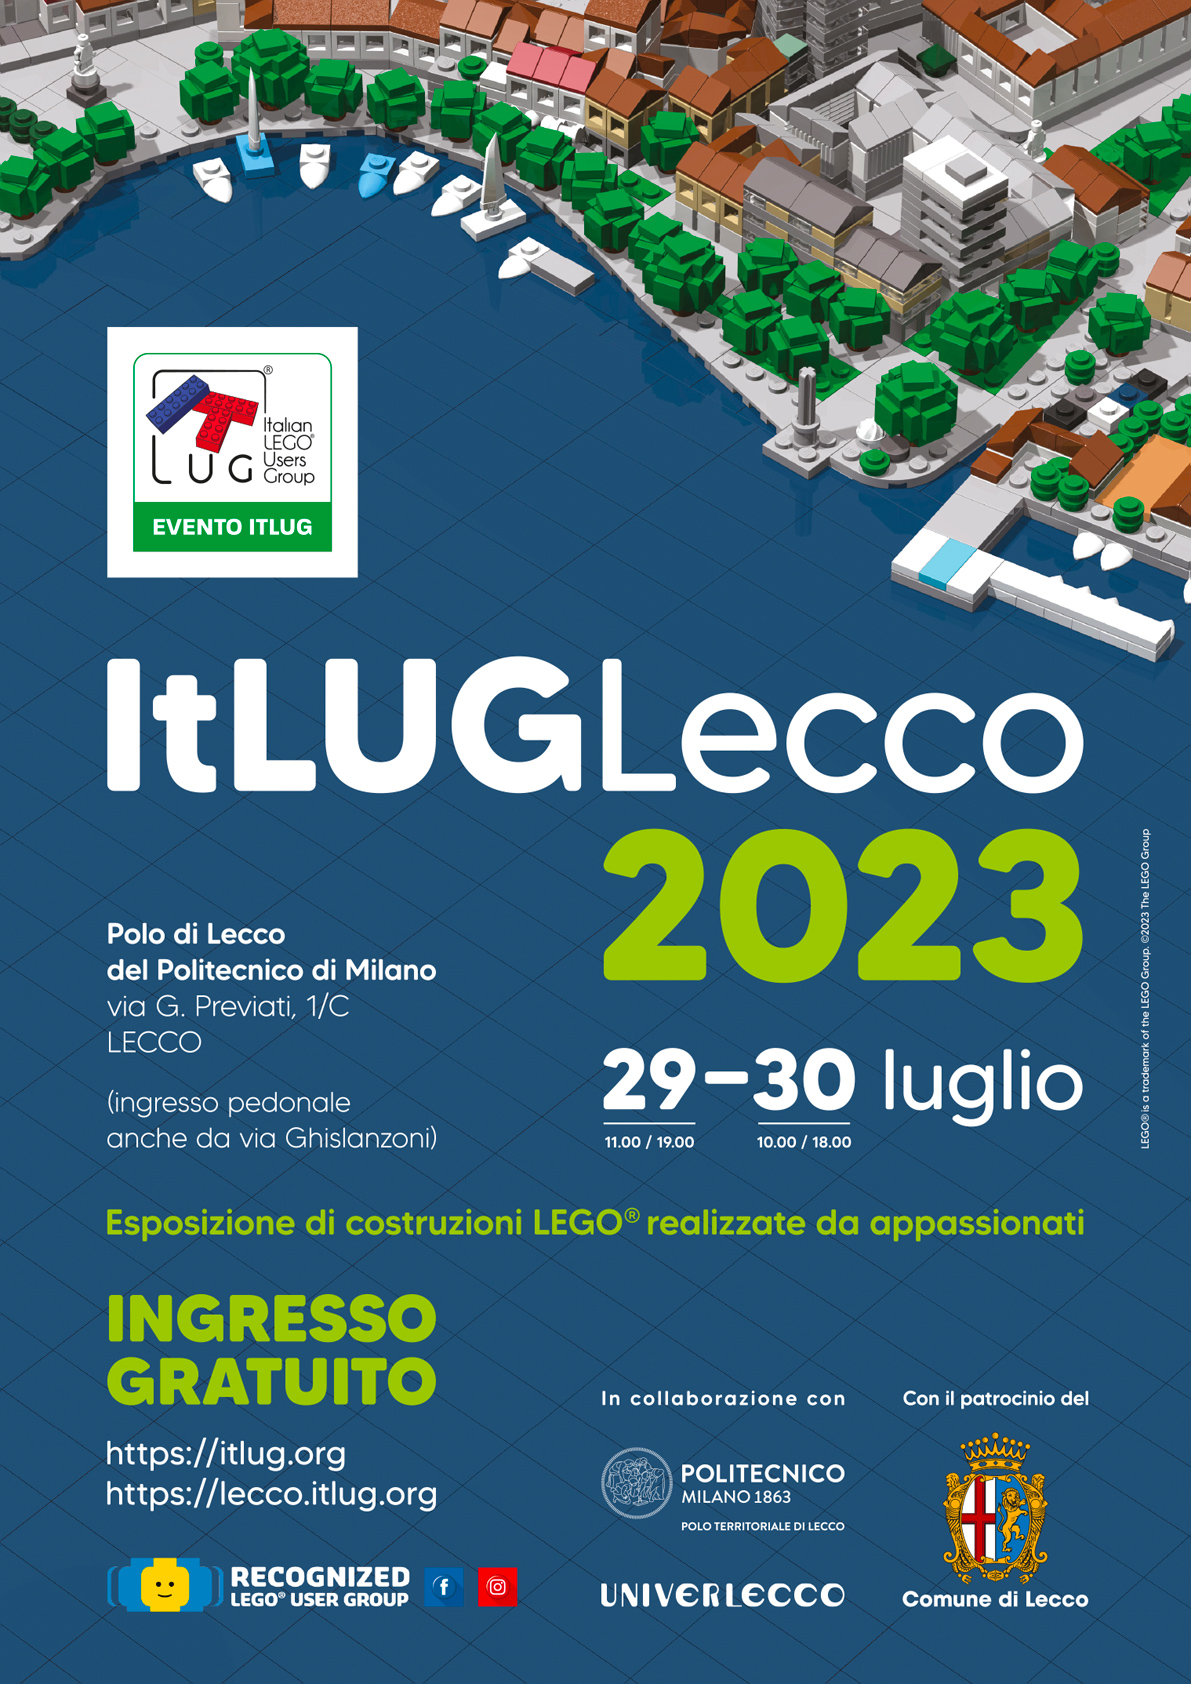 ItLUG Lecco 2023